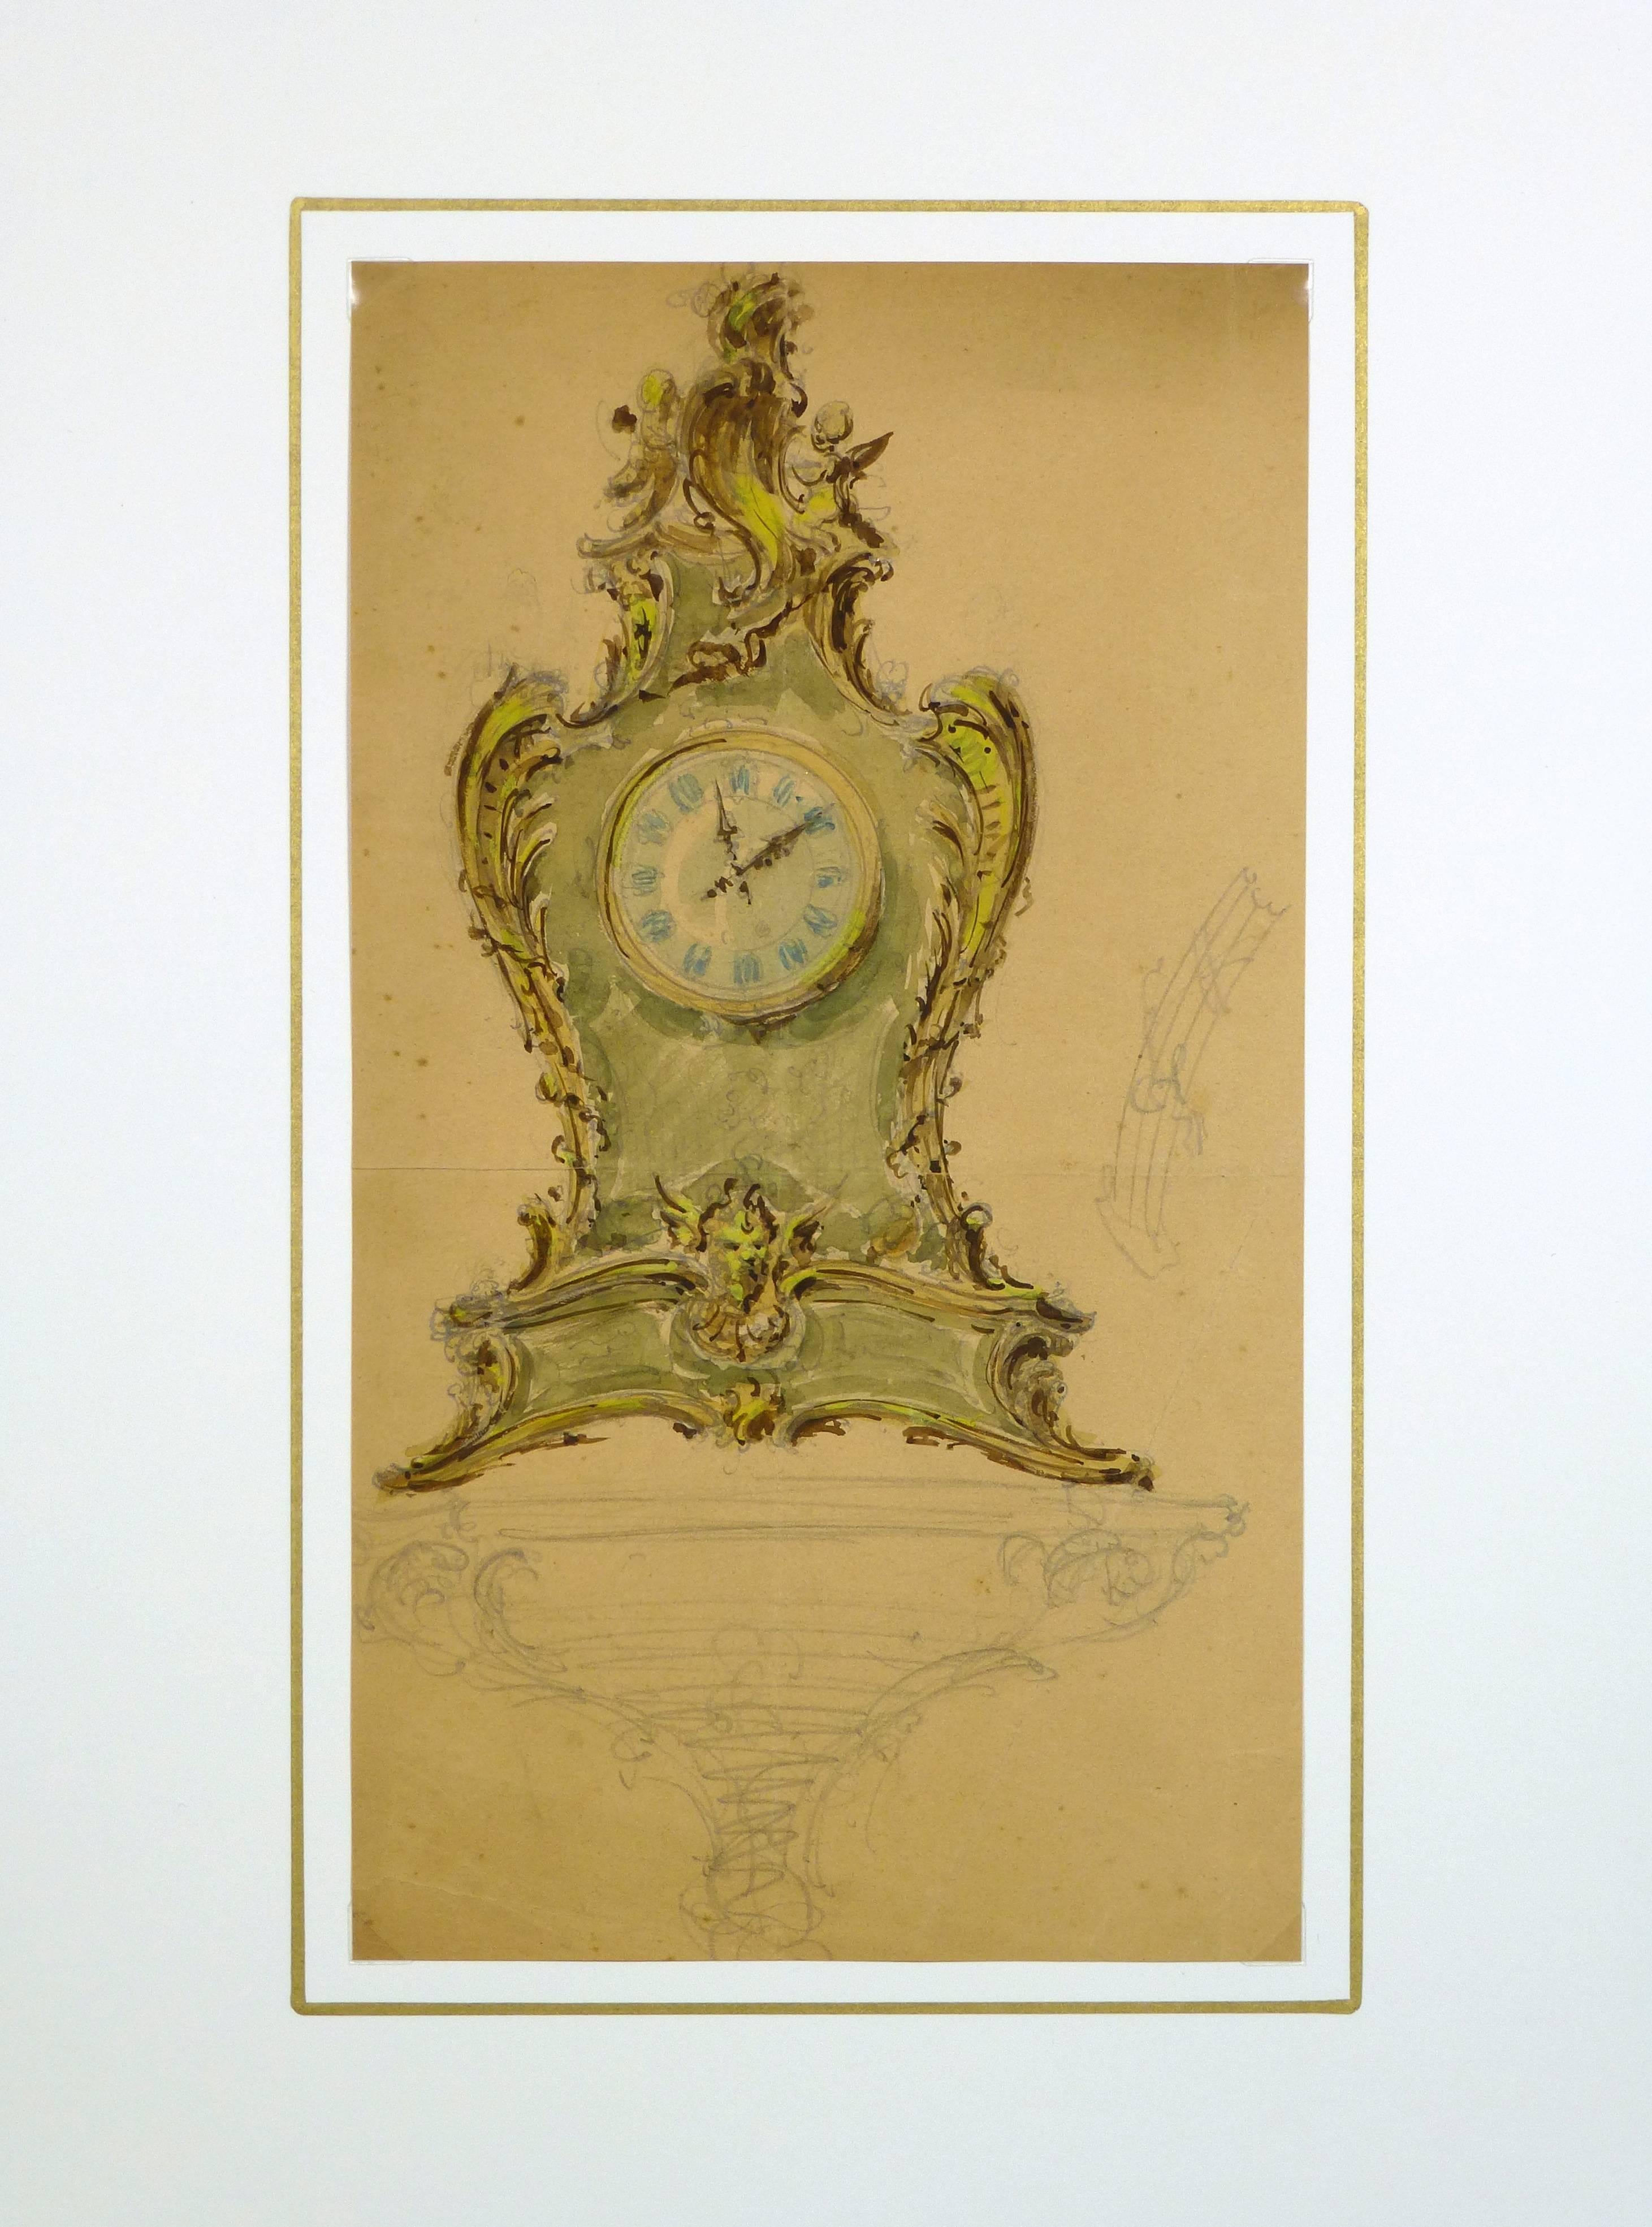 Französisches Aquarell und Bleistift einer verschnörkelten Uhr, um 1930.  

Originalkunstwerk auf Papier auf einem weißen Passepartout mit Goldrand. Inklusive Plastikhülle und Echtheitszertifikat für die Archivierung. Kunstwerk, 12 